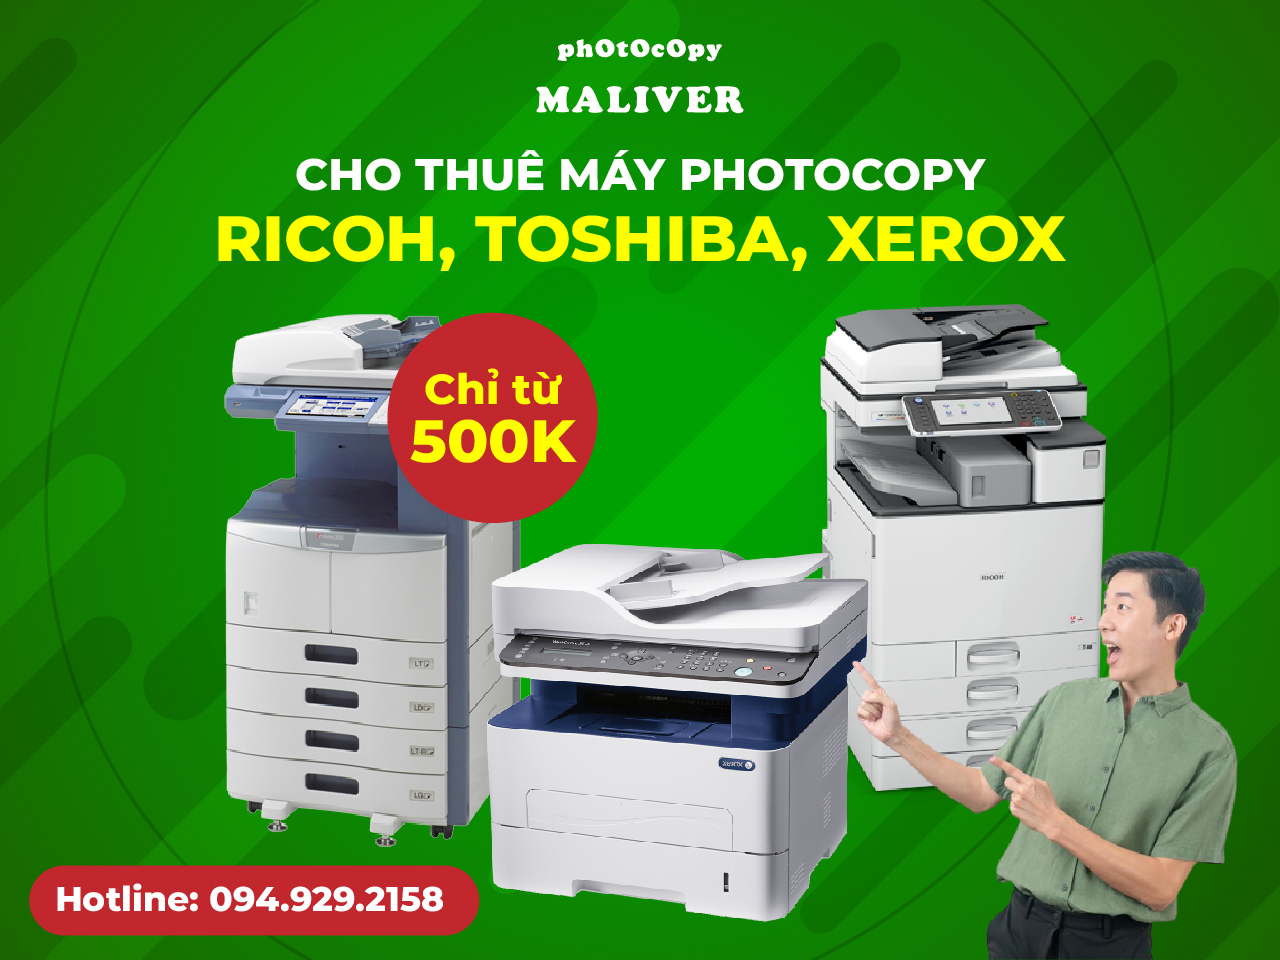 Cho thuê máy photocopy Ricoh, Toshiba, Xerox chỉ từ 500K